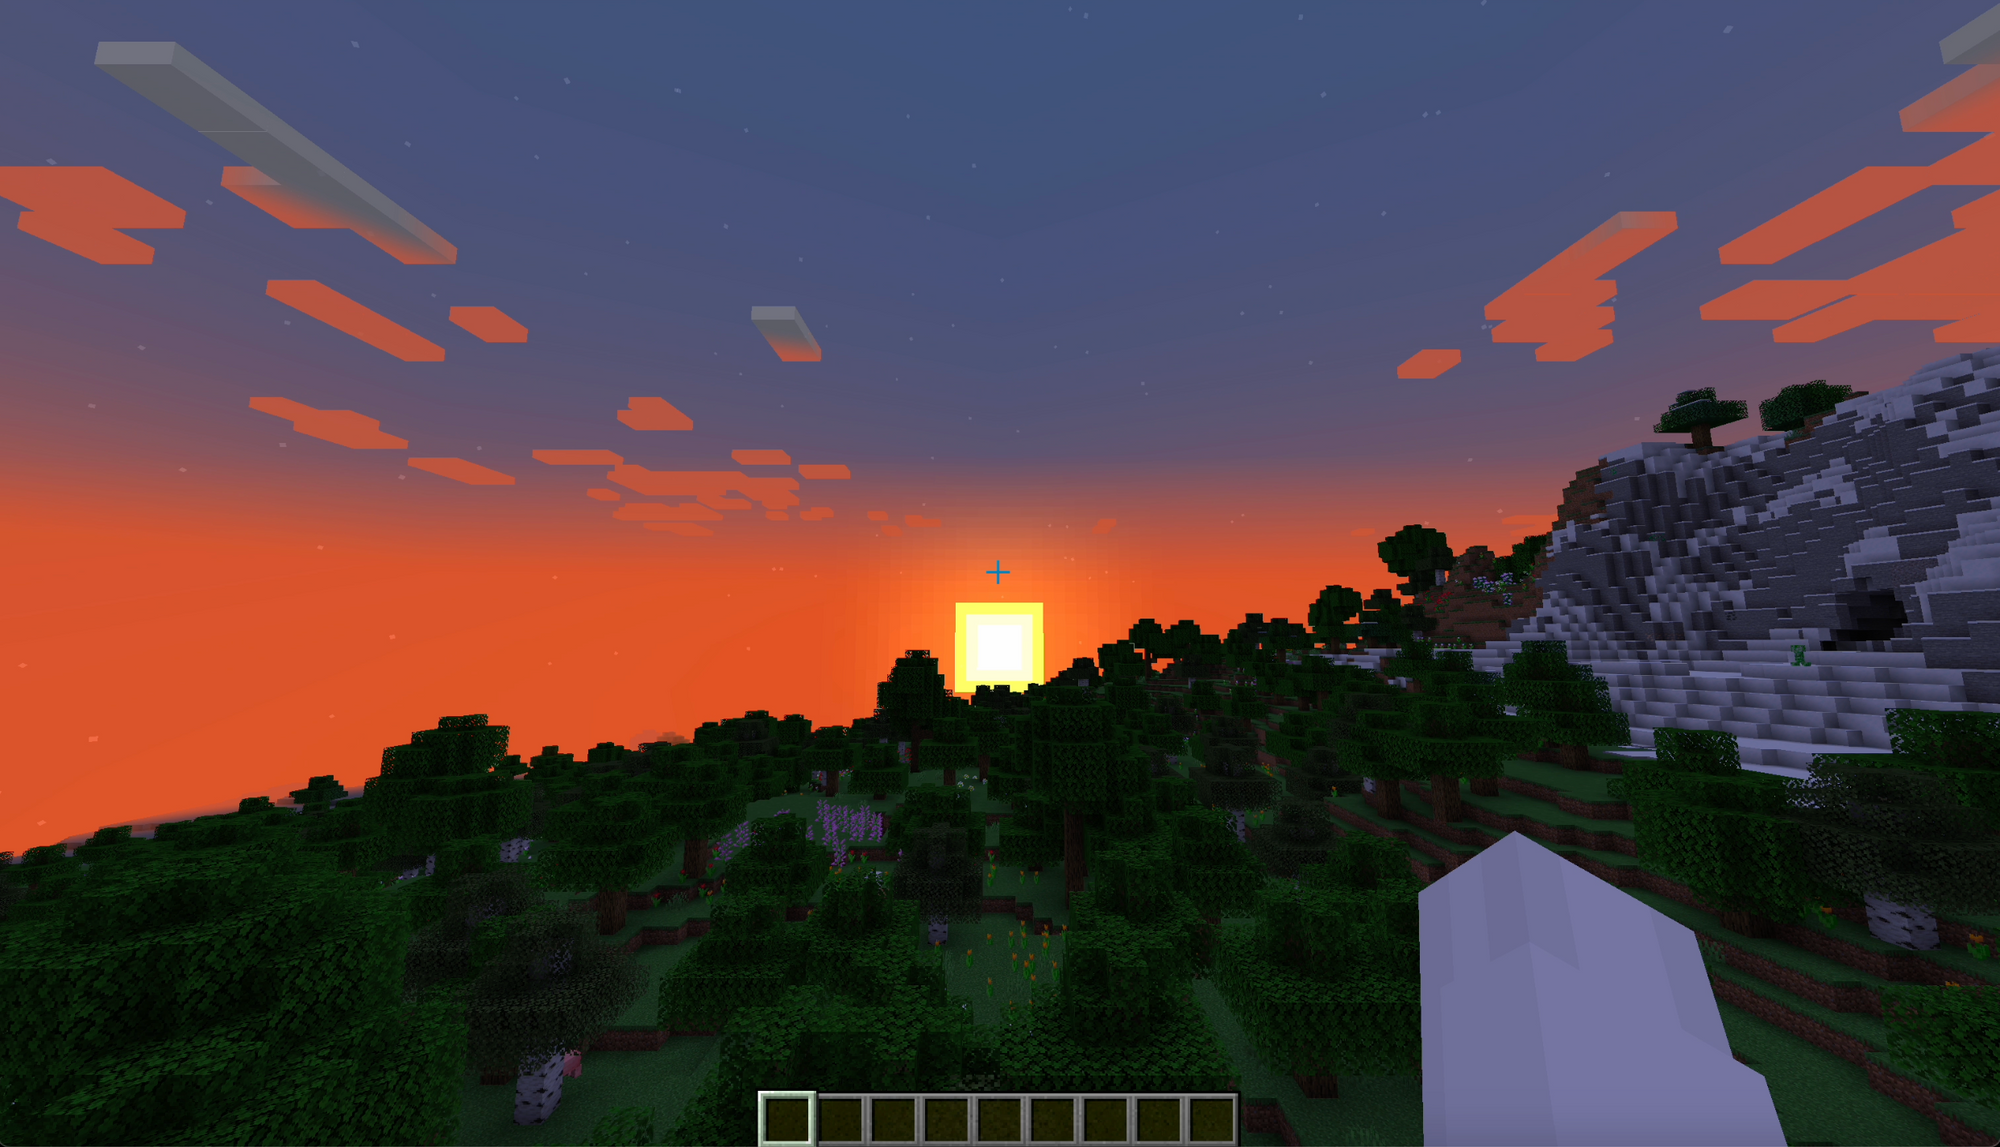 Dawn or sunrise in a Minecraft world